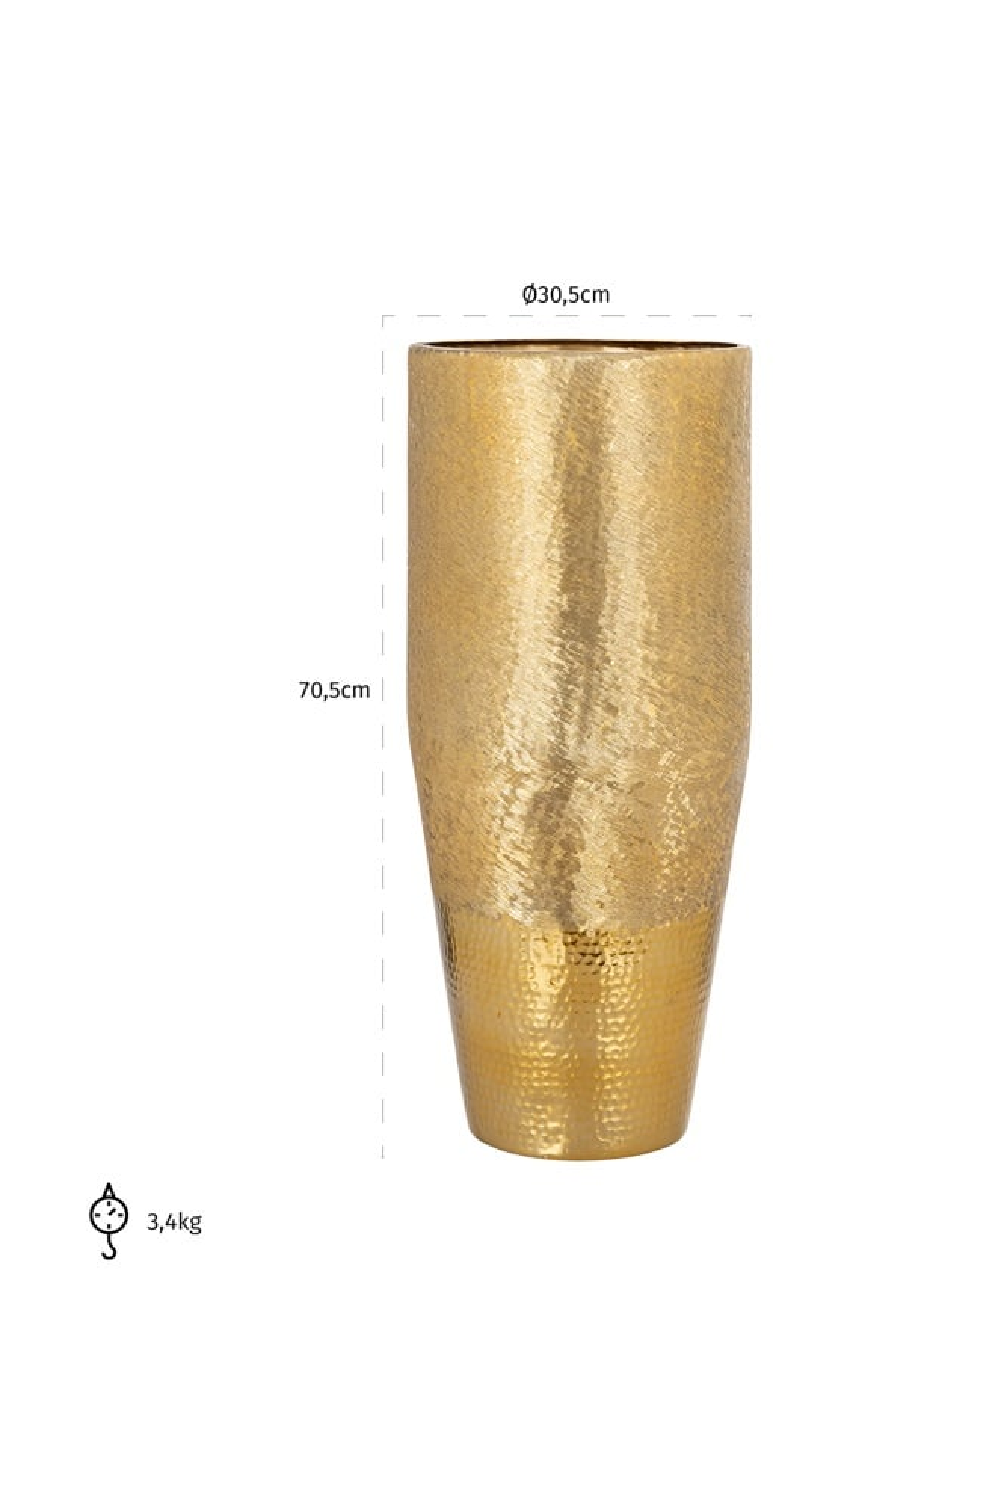 Gold Rustic Vase | OROA Nalim | Oroa.com